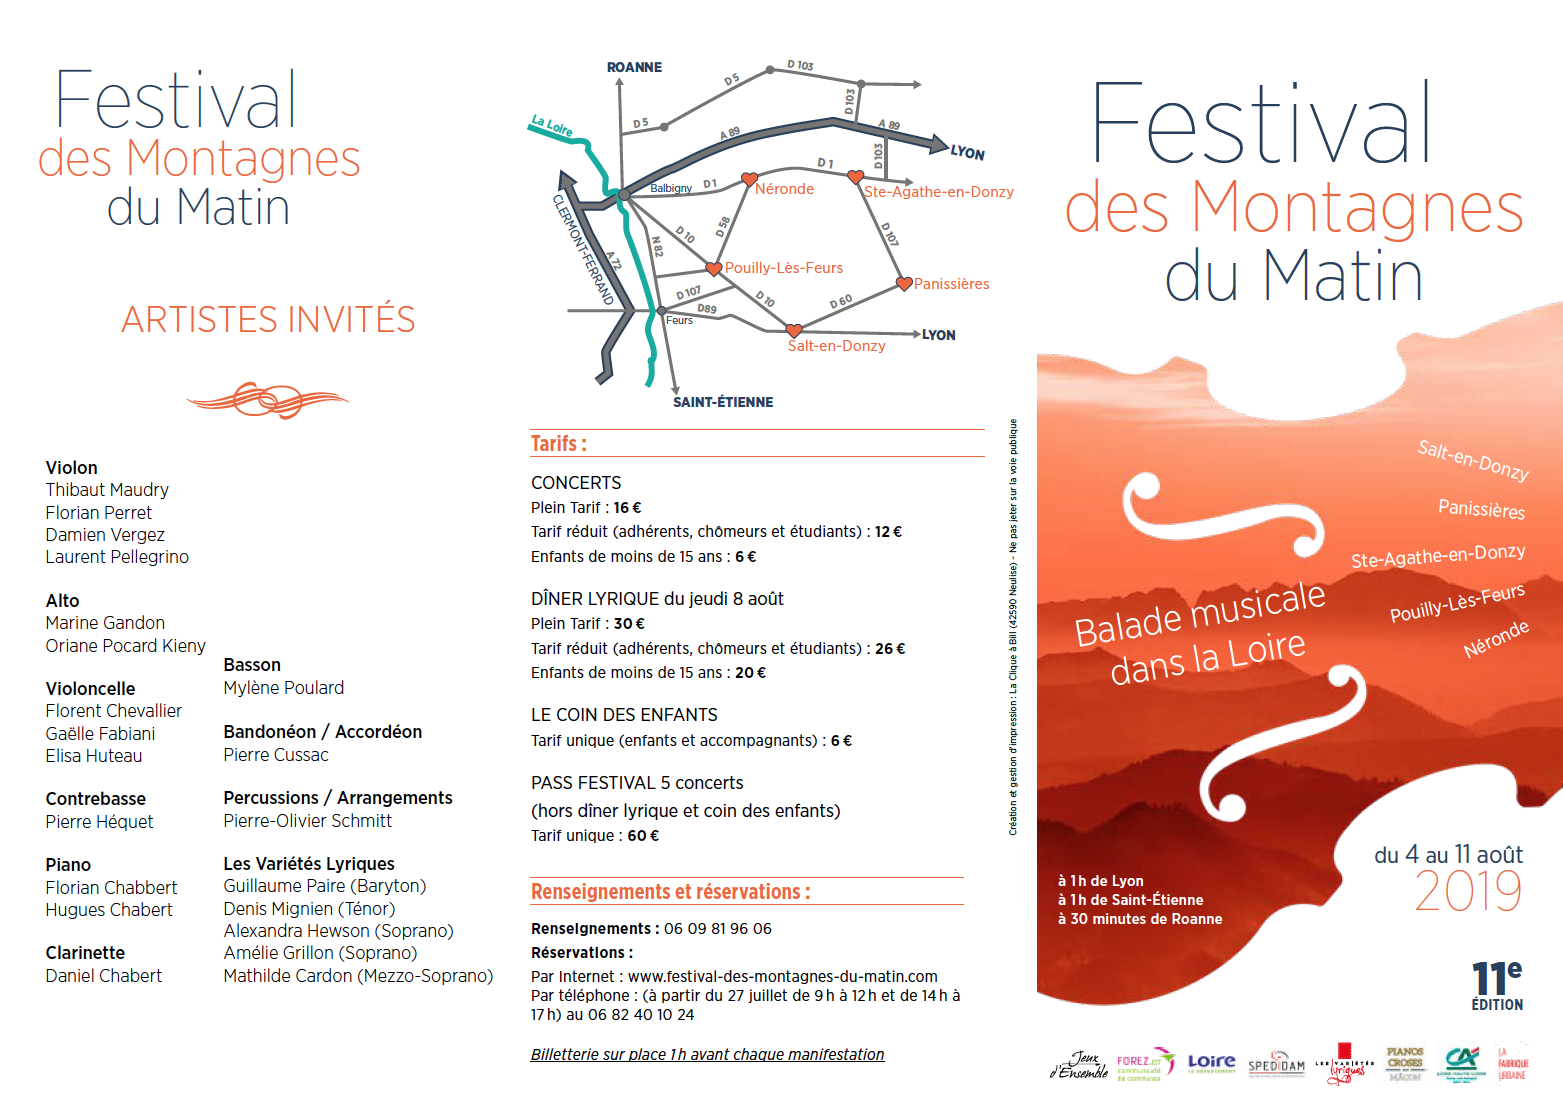 Plaquette recto du 11e Festival des Montagnes du Matin